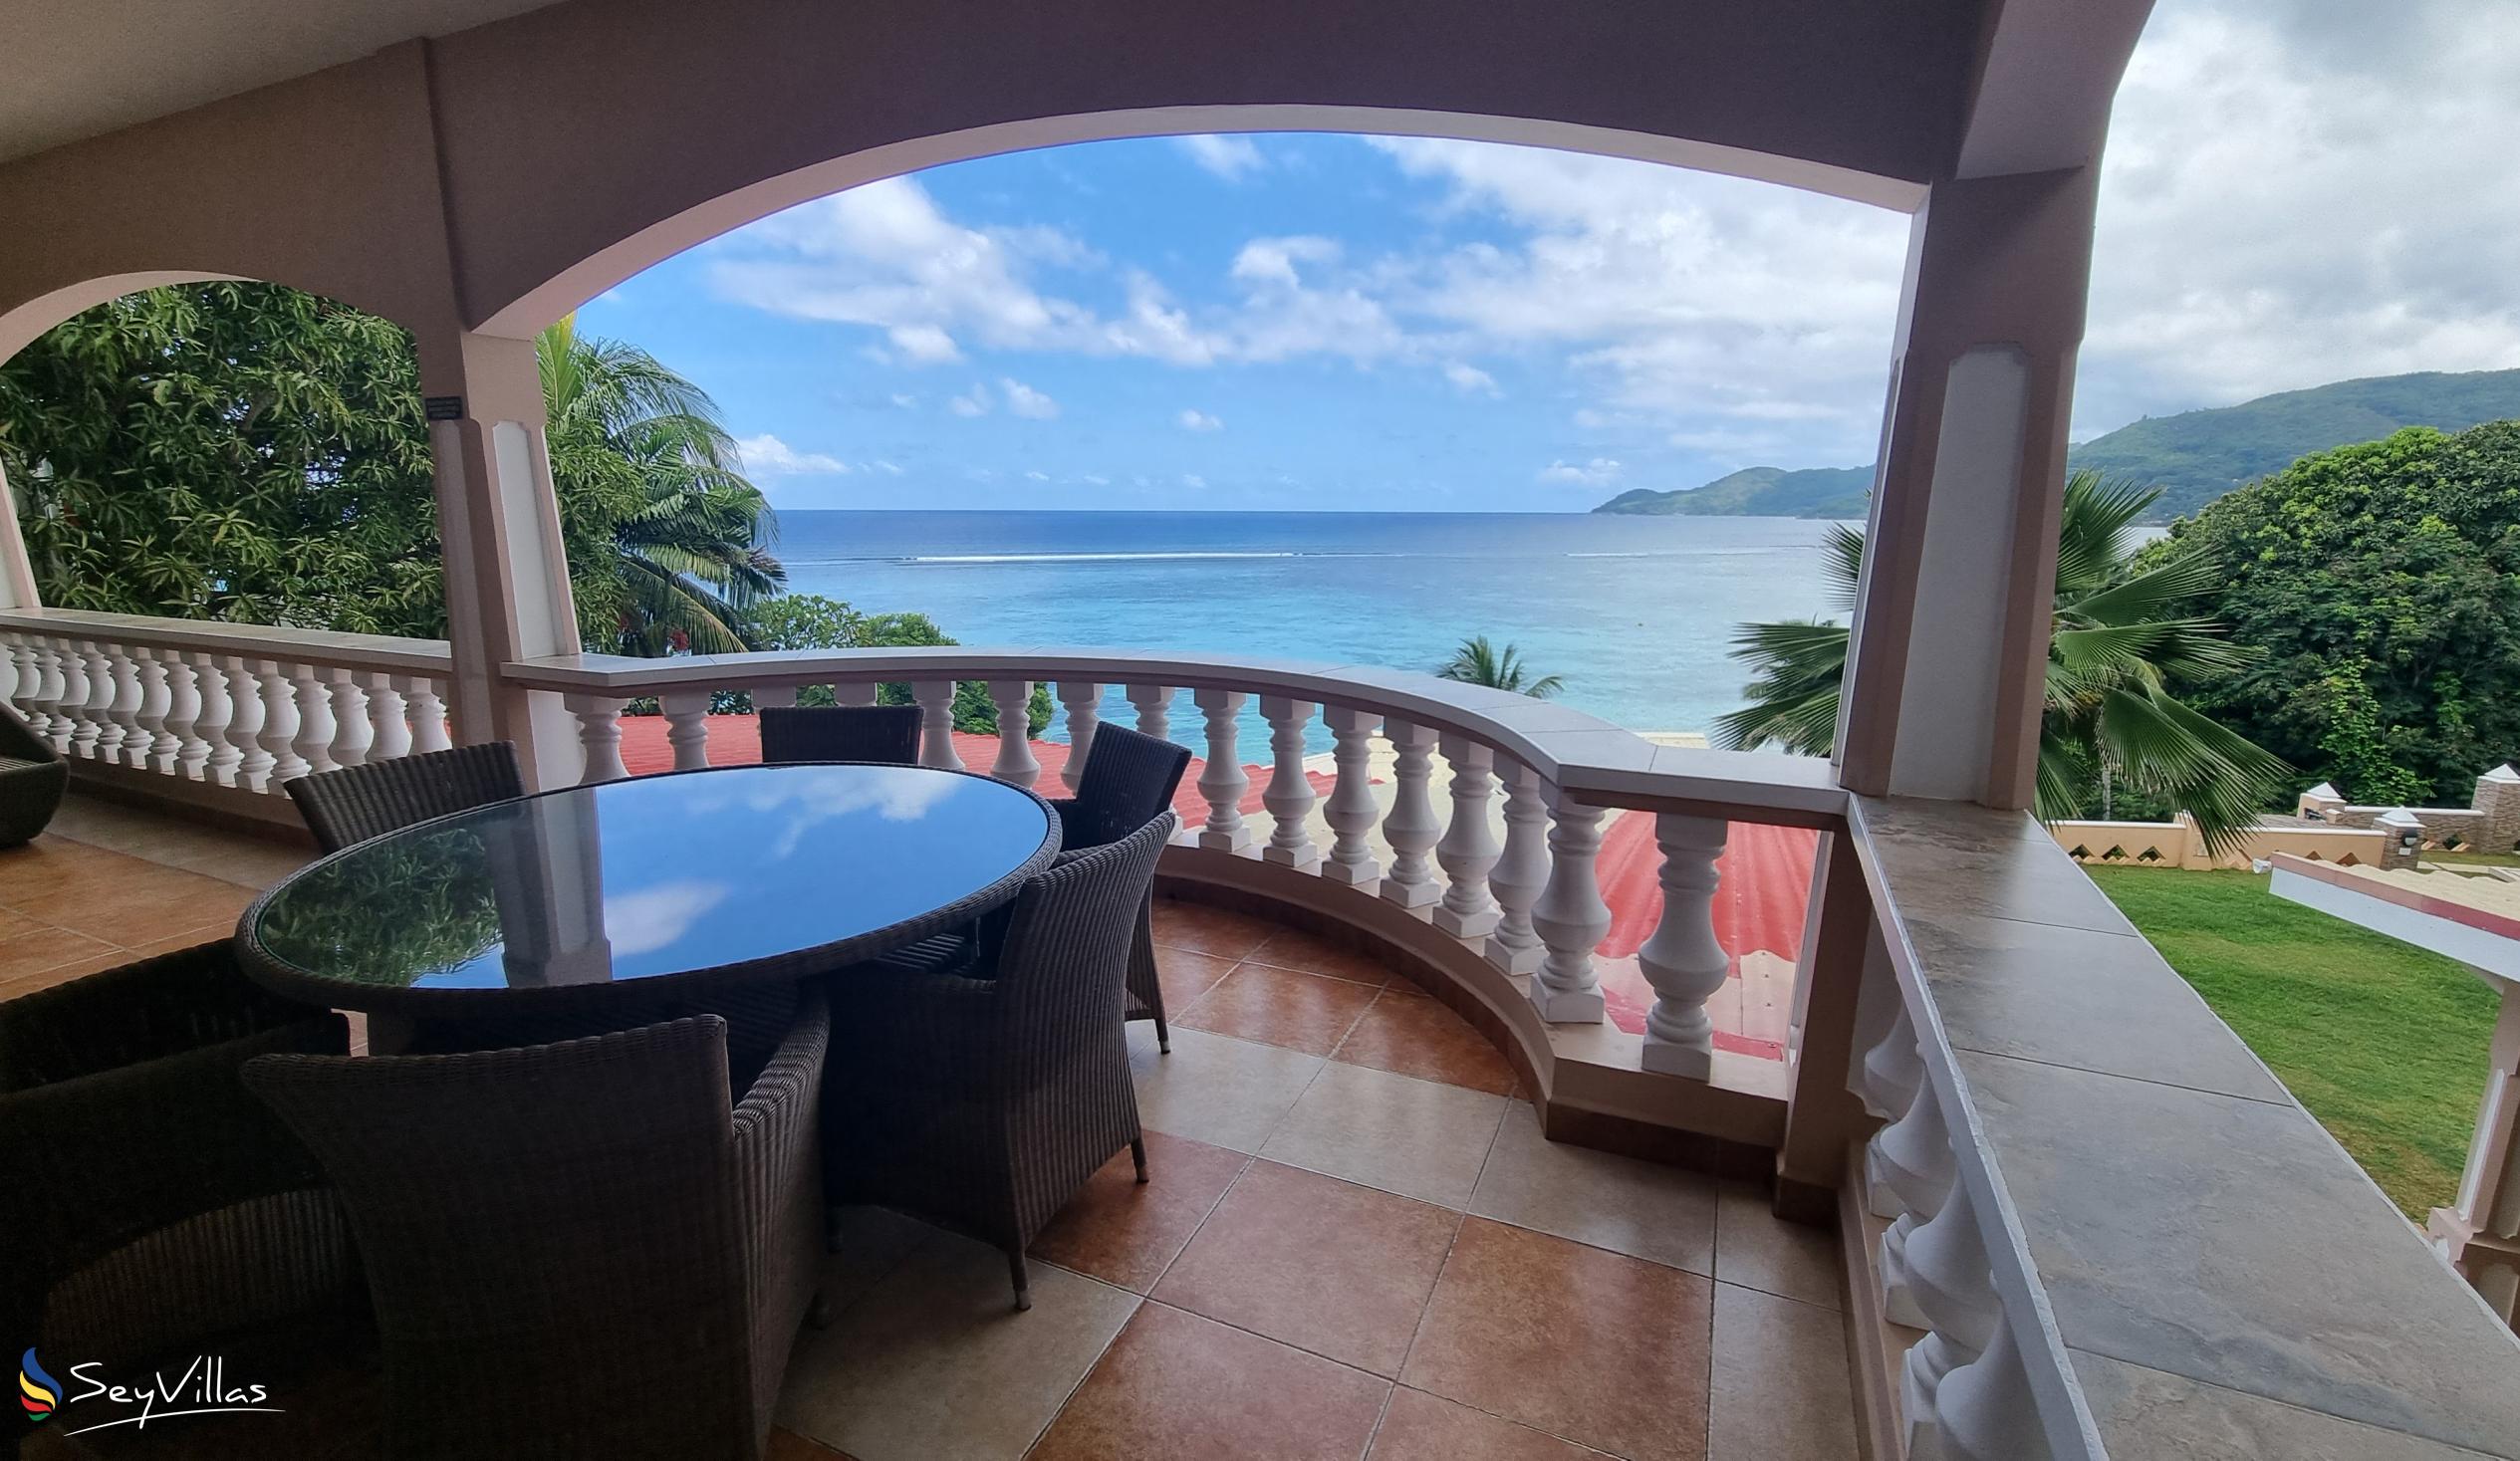 Foto 107: Au Fond de Mer View - Appartement 2 chambres avec vue sur la mer - Mahé (Seychelles)